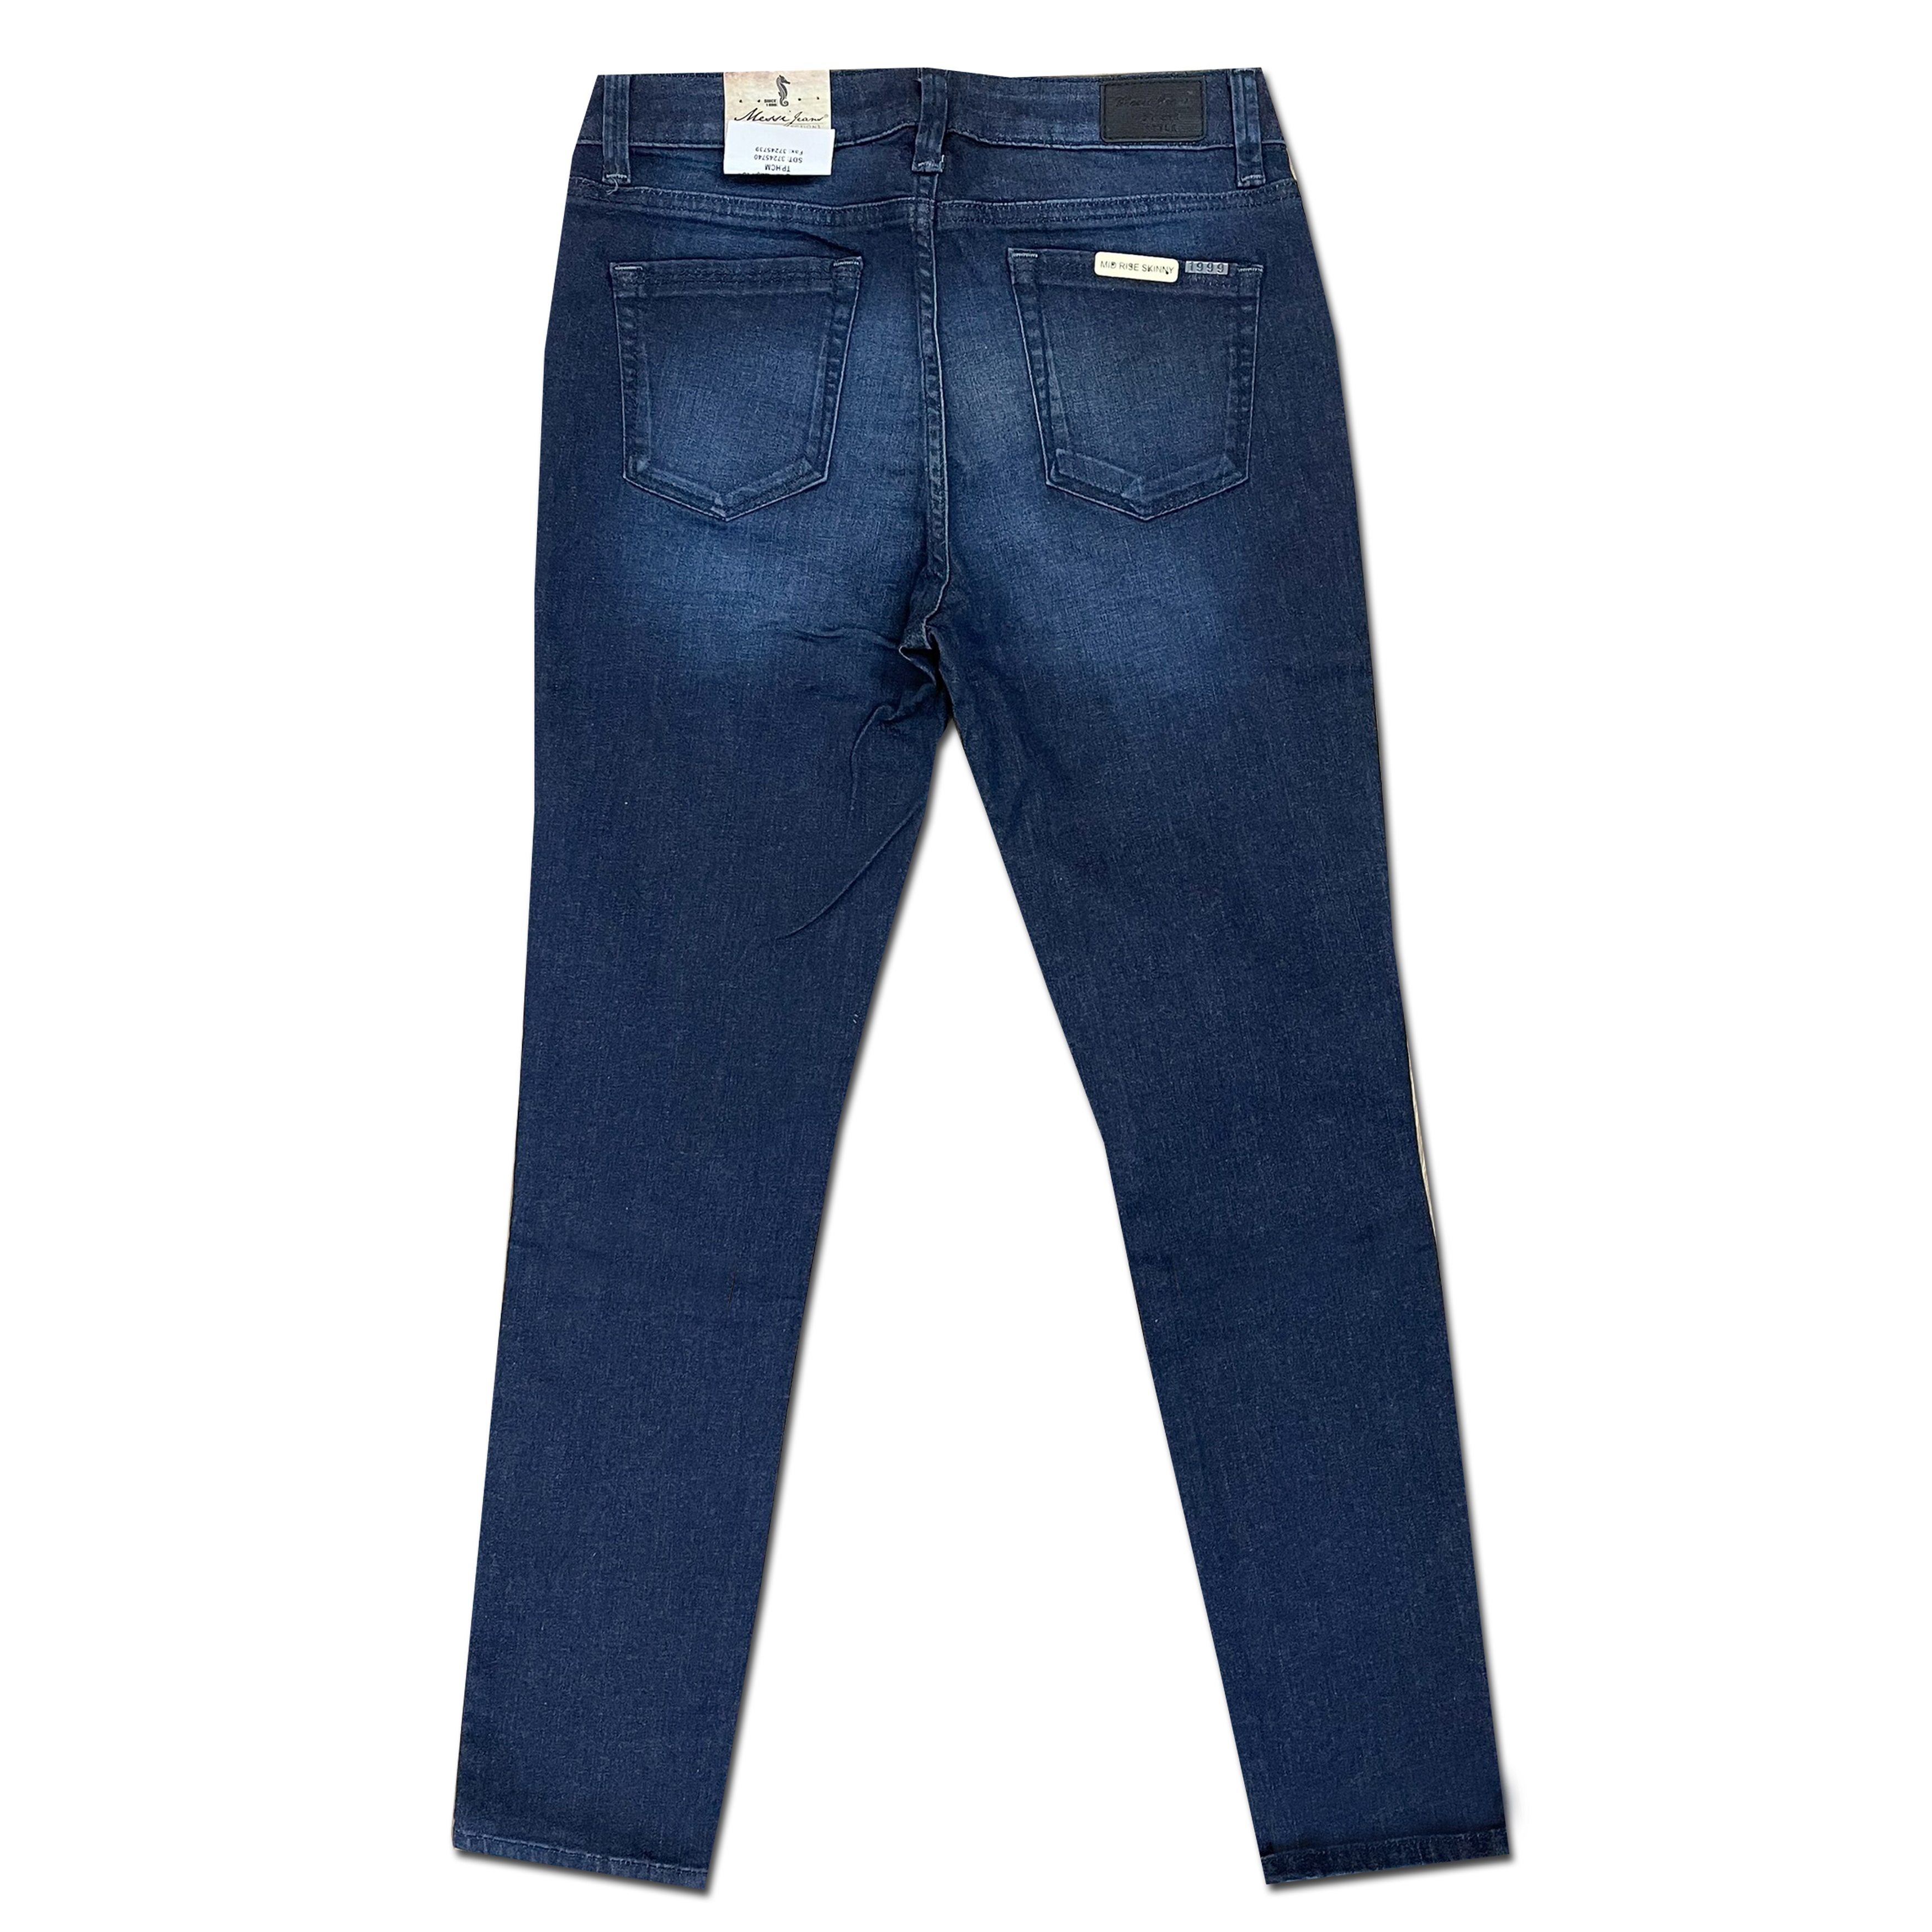 Quần jeans nữ ống ôm MESSI SJW-639-17